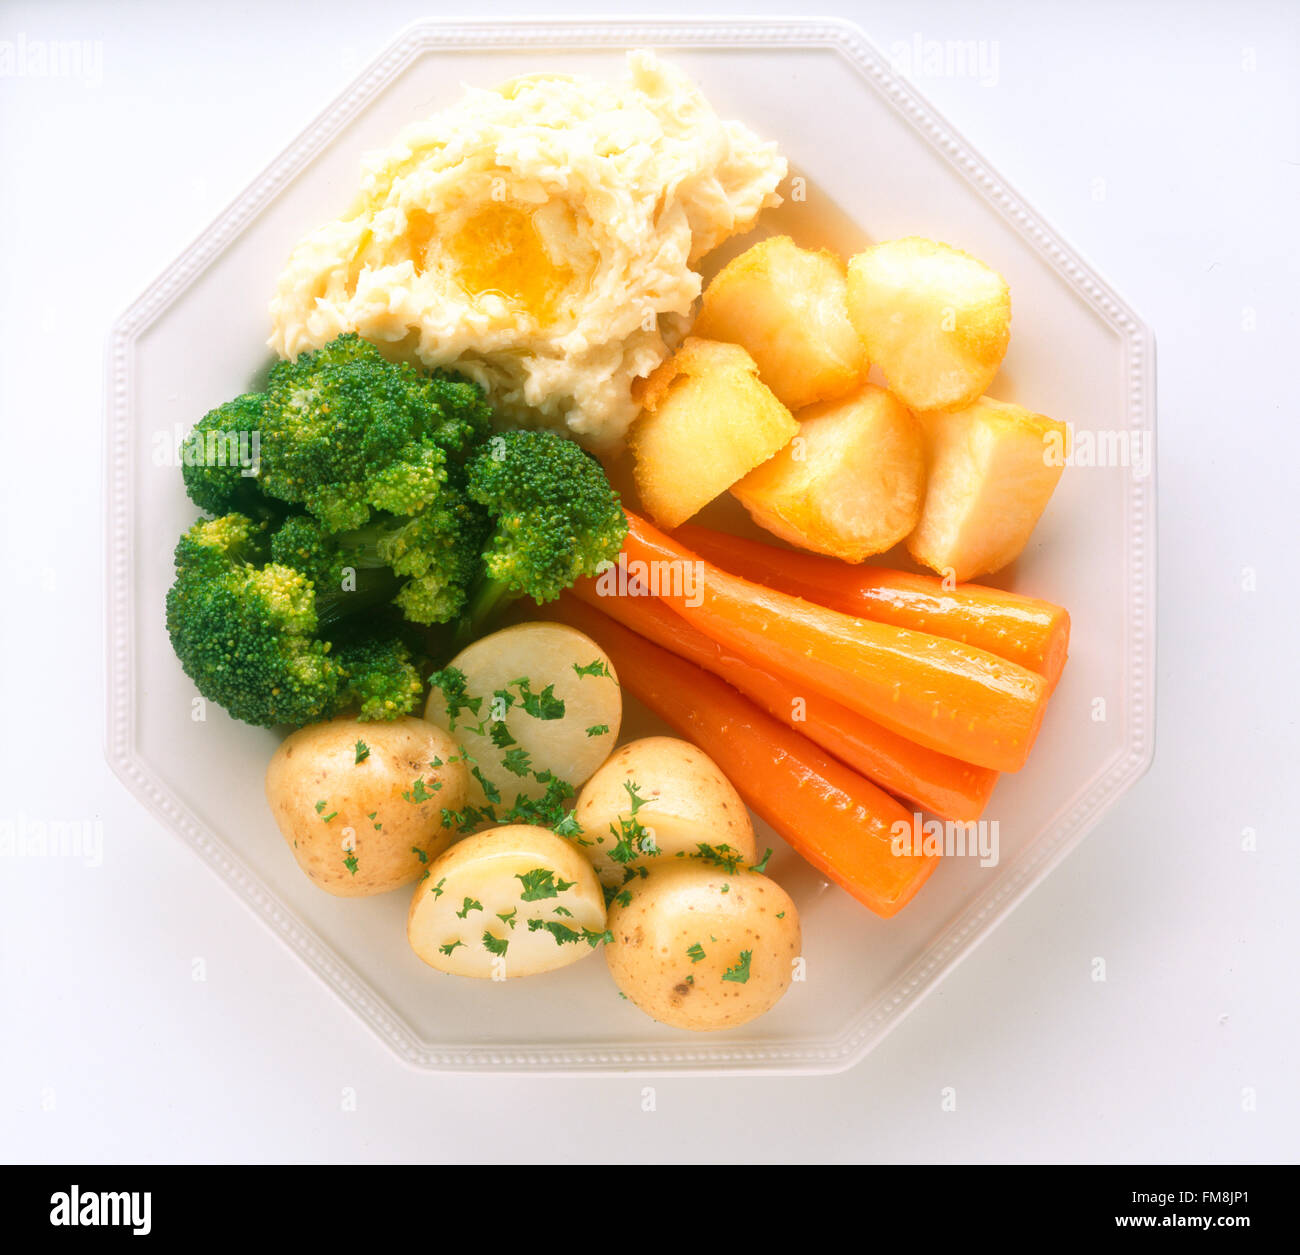 Irland, Gemüse-Teller mit gedämpften Brokkoli, Karotten, gebratene, gekochte und gestampfte Kartoffeln Stockfoto